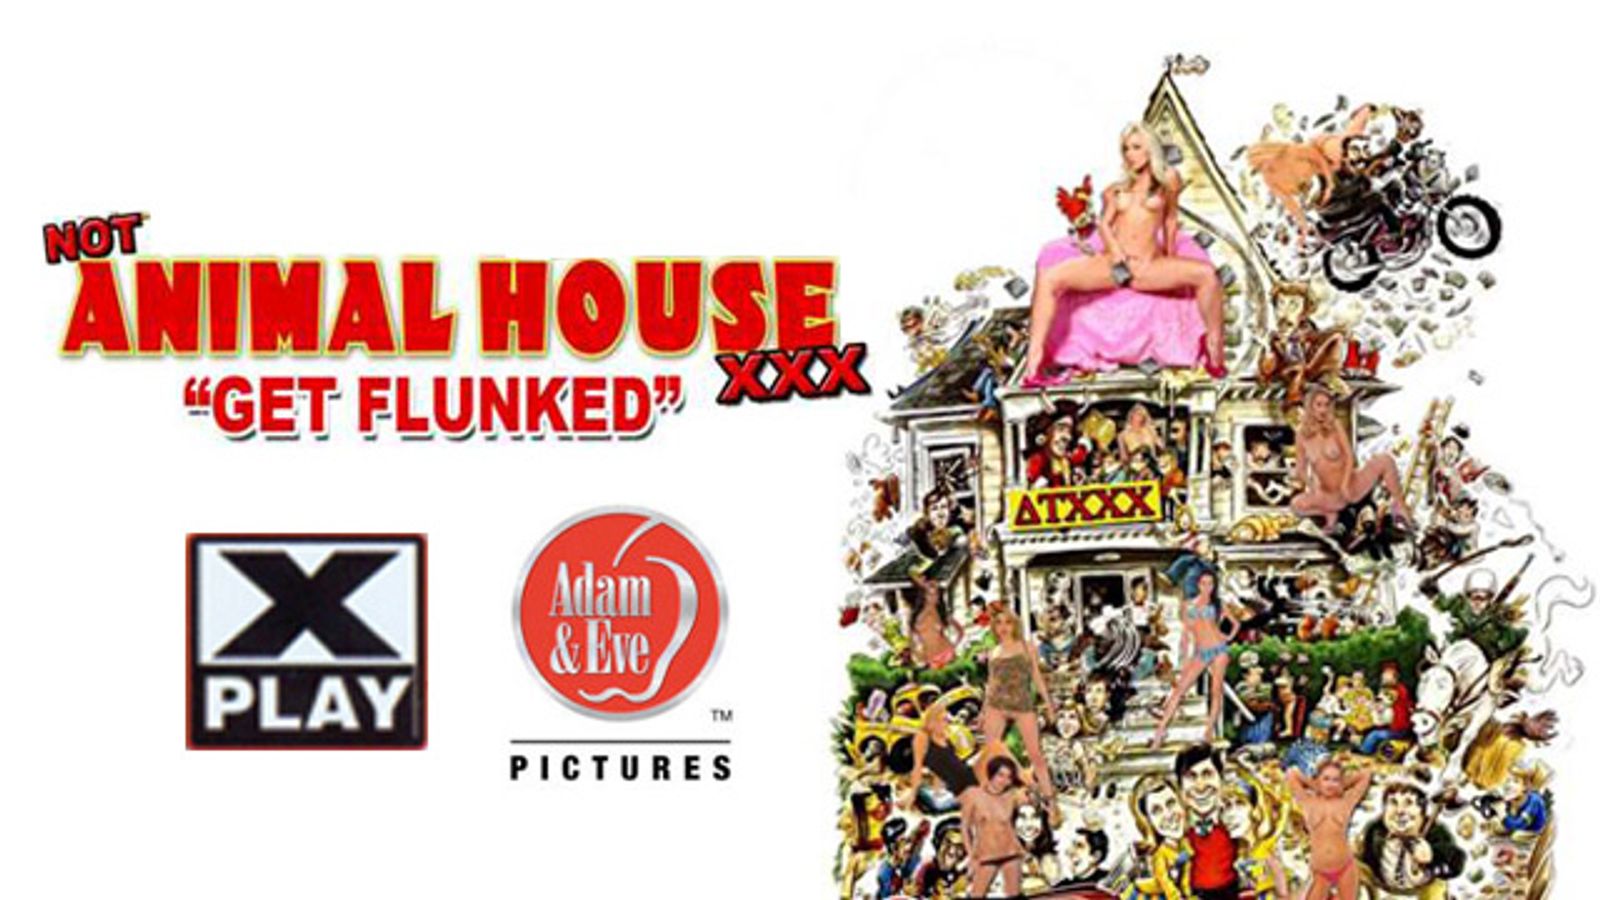 Adam & Eve, X-Play to Co-Produce 'Animal House' Parody